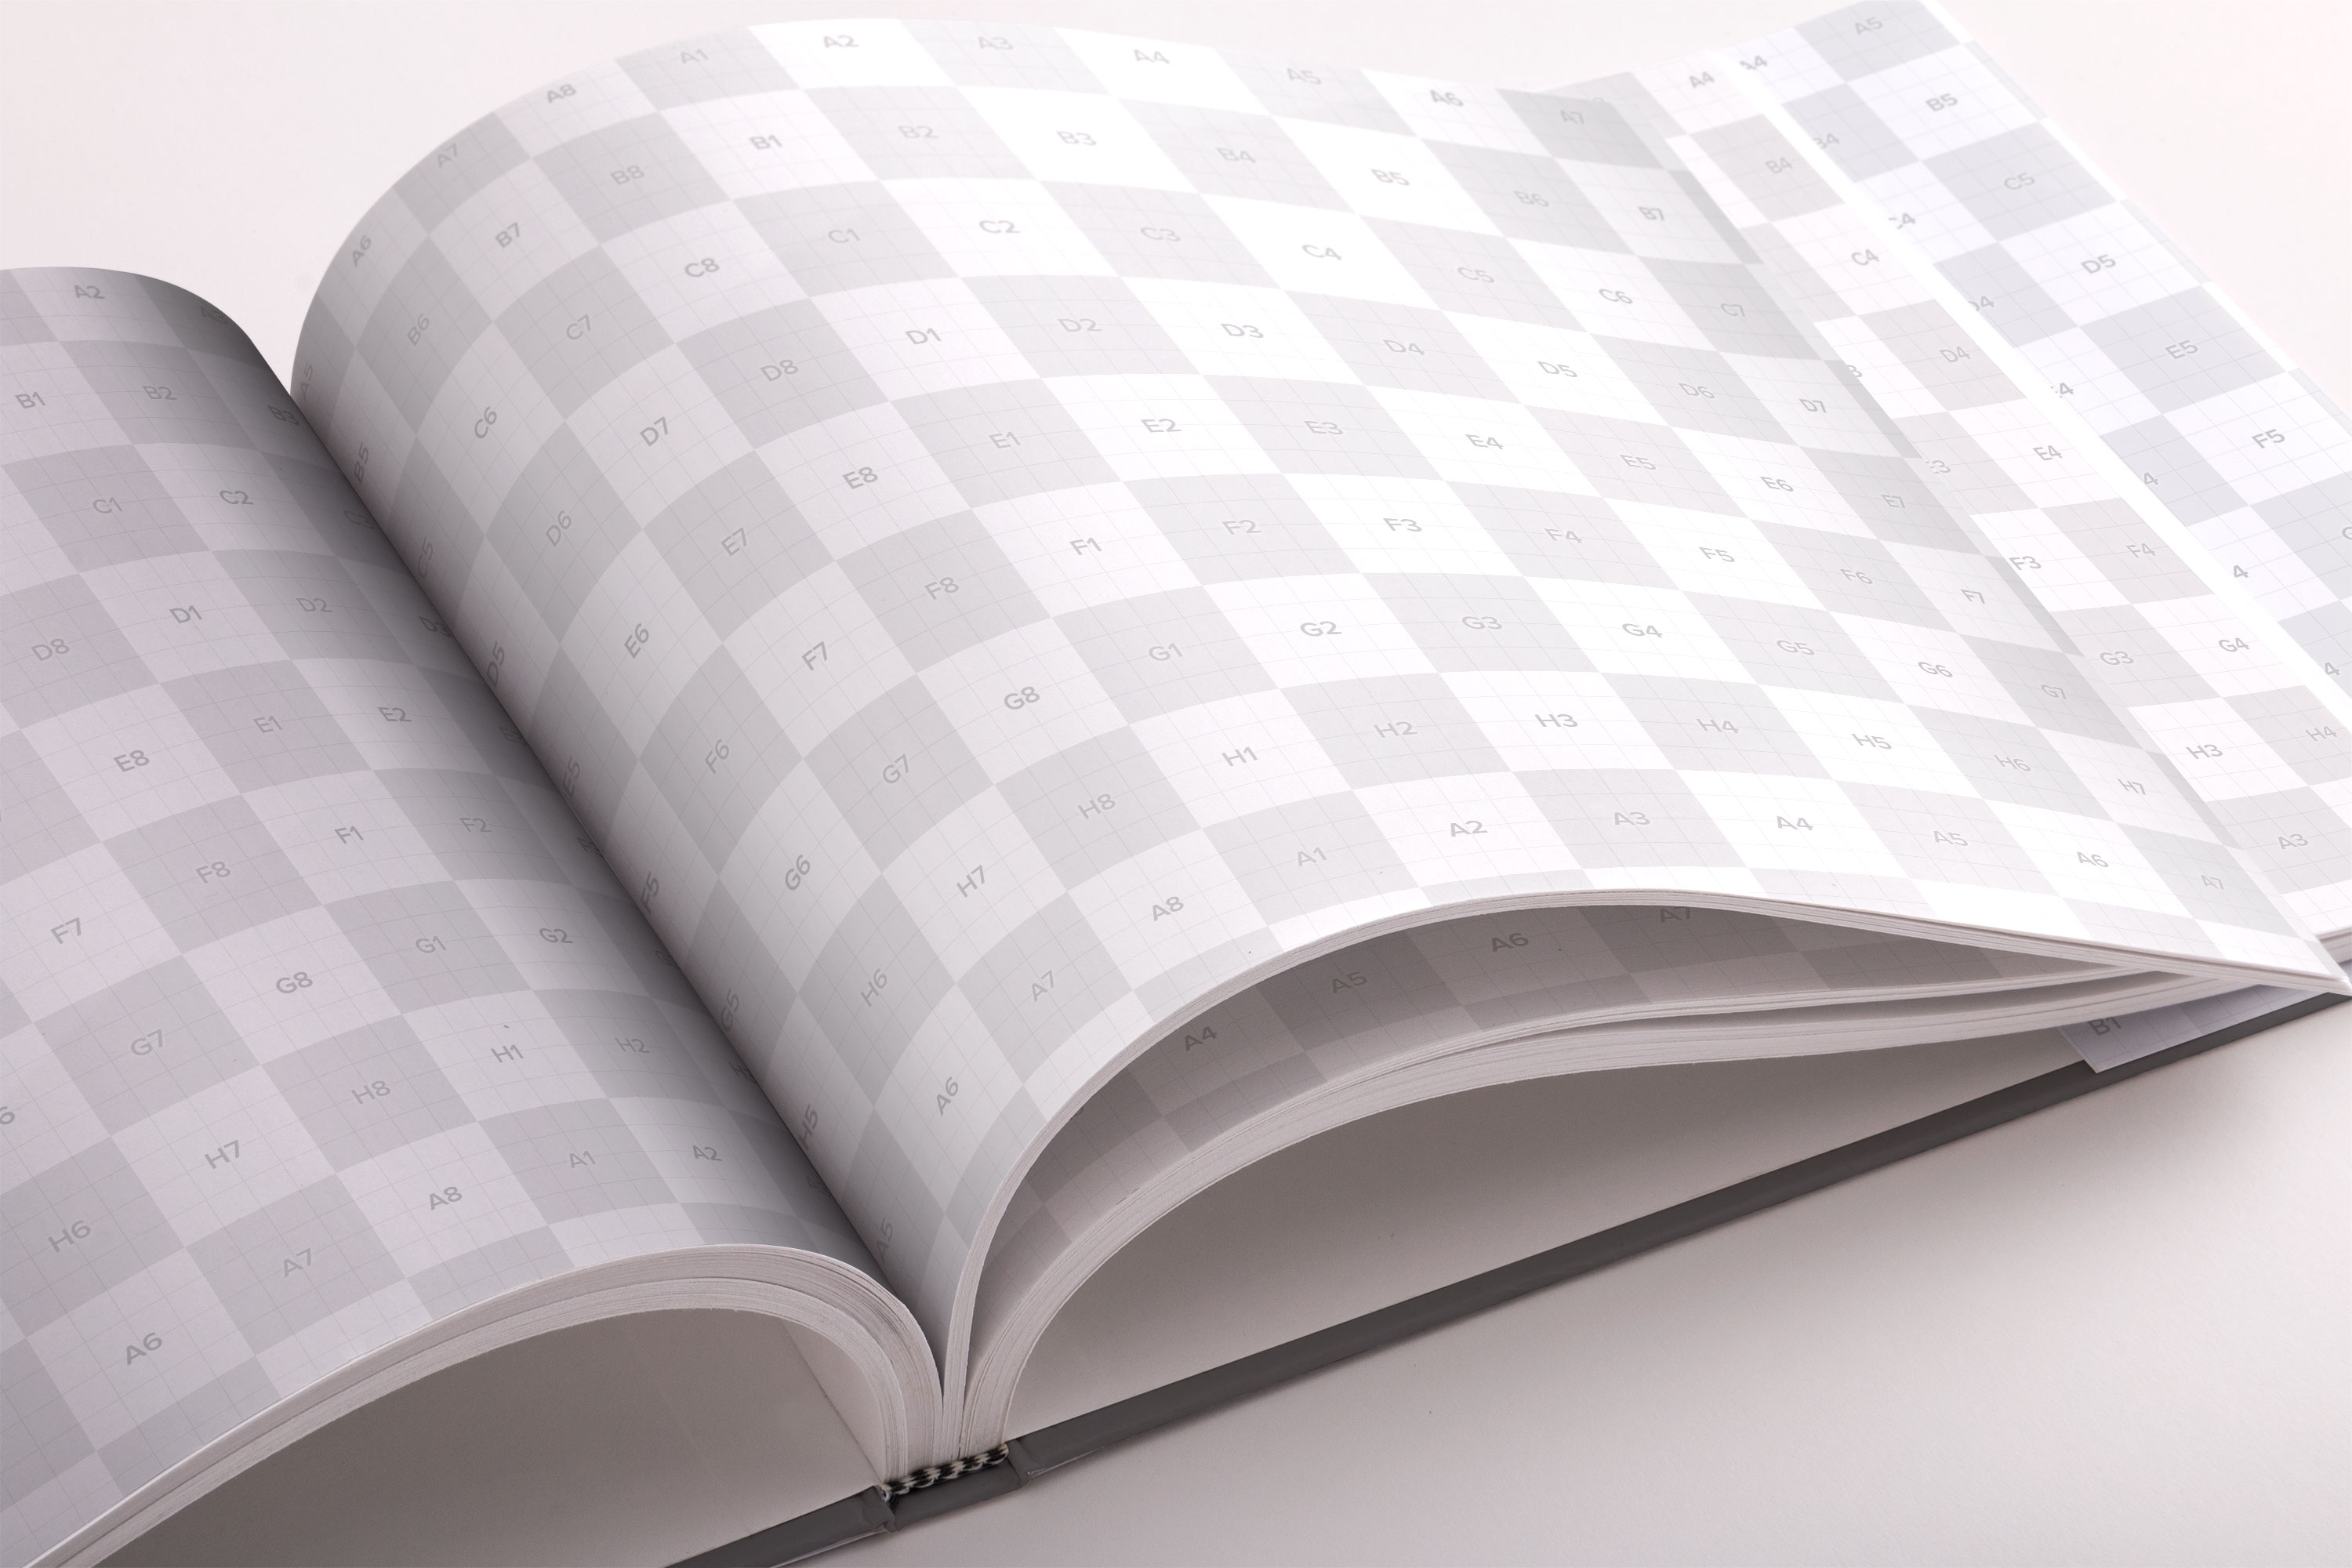 标准精装画册/图书内页版式设计PSD样机03 Hardcover Standard Landscape Book PSD Mockup 03插图(1)